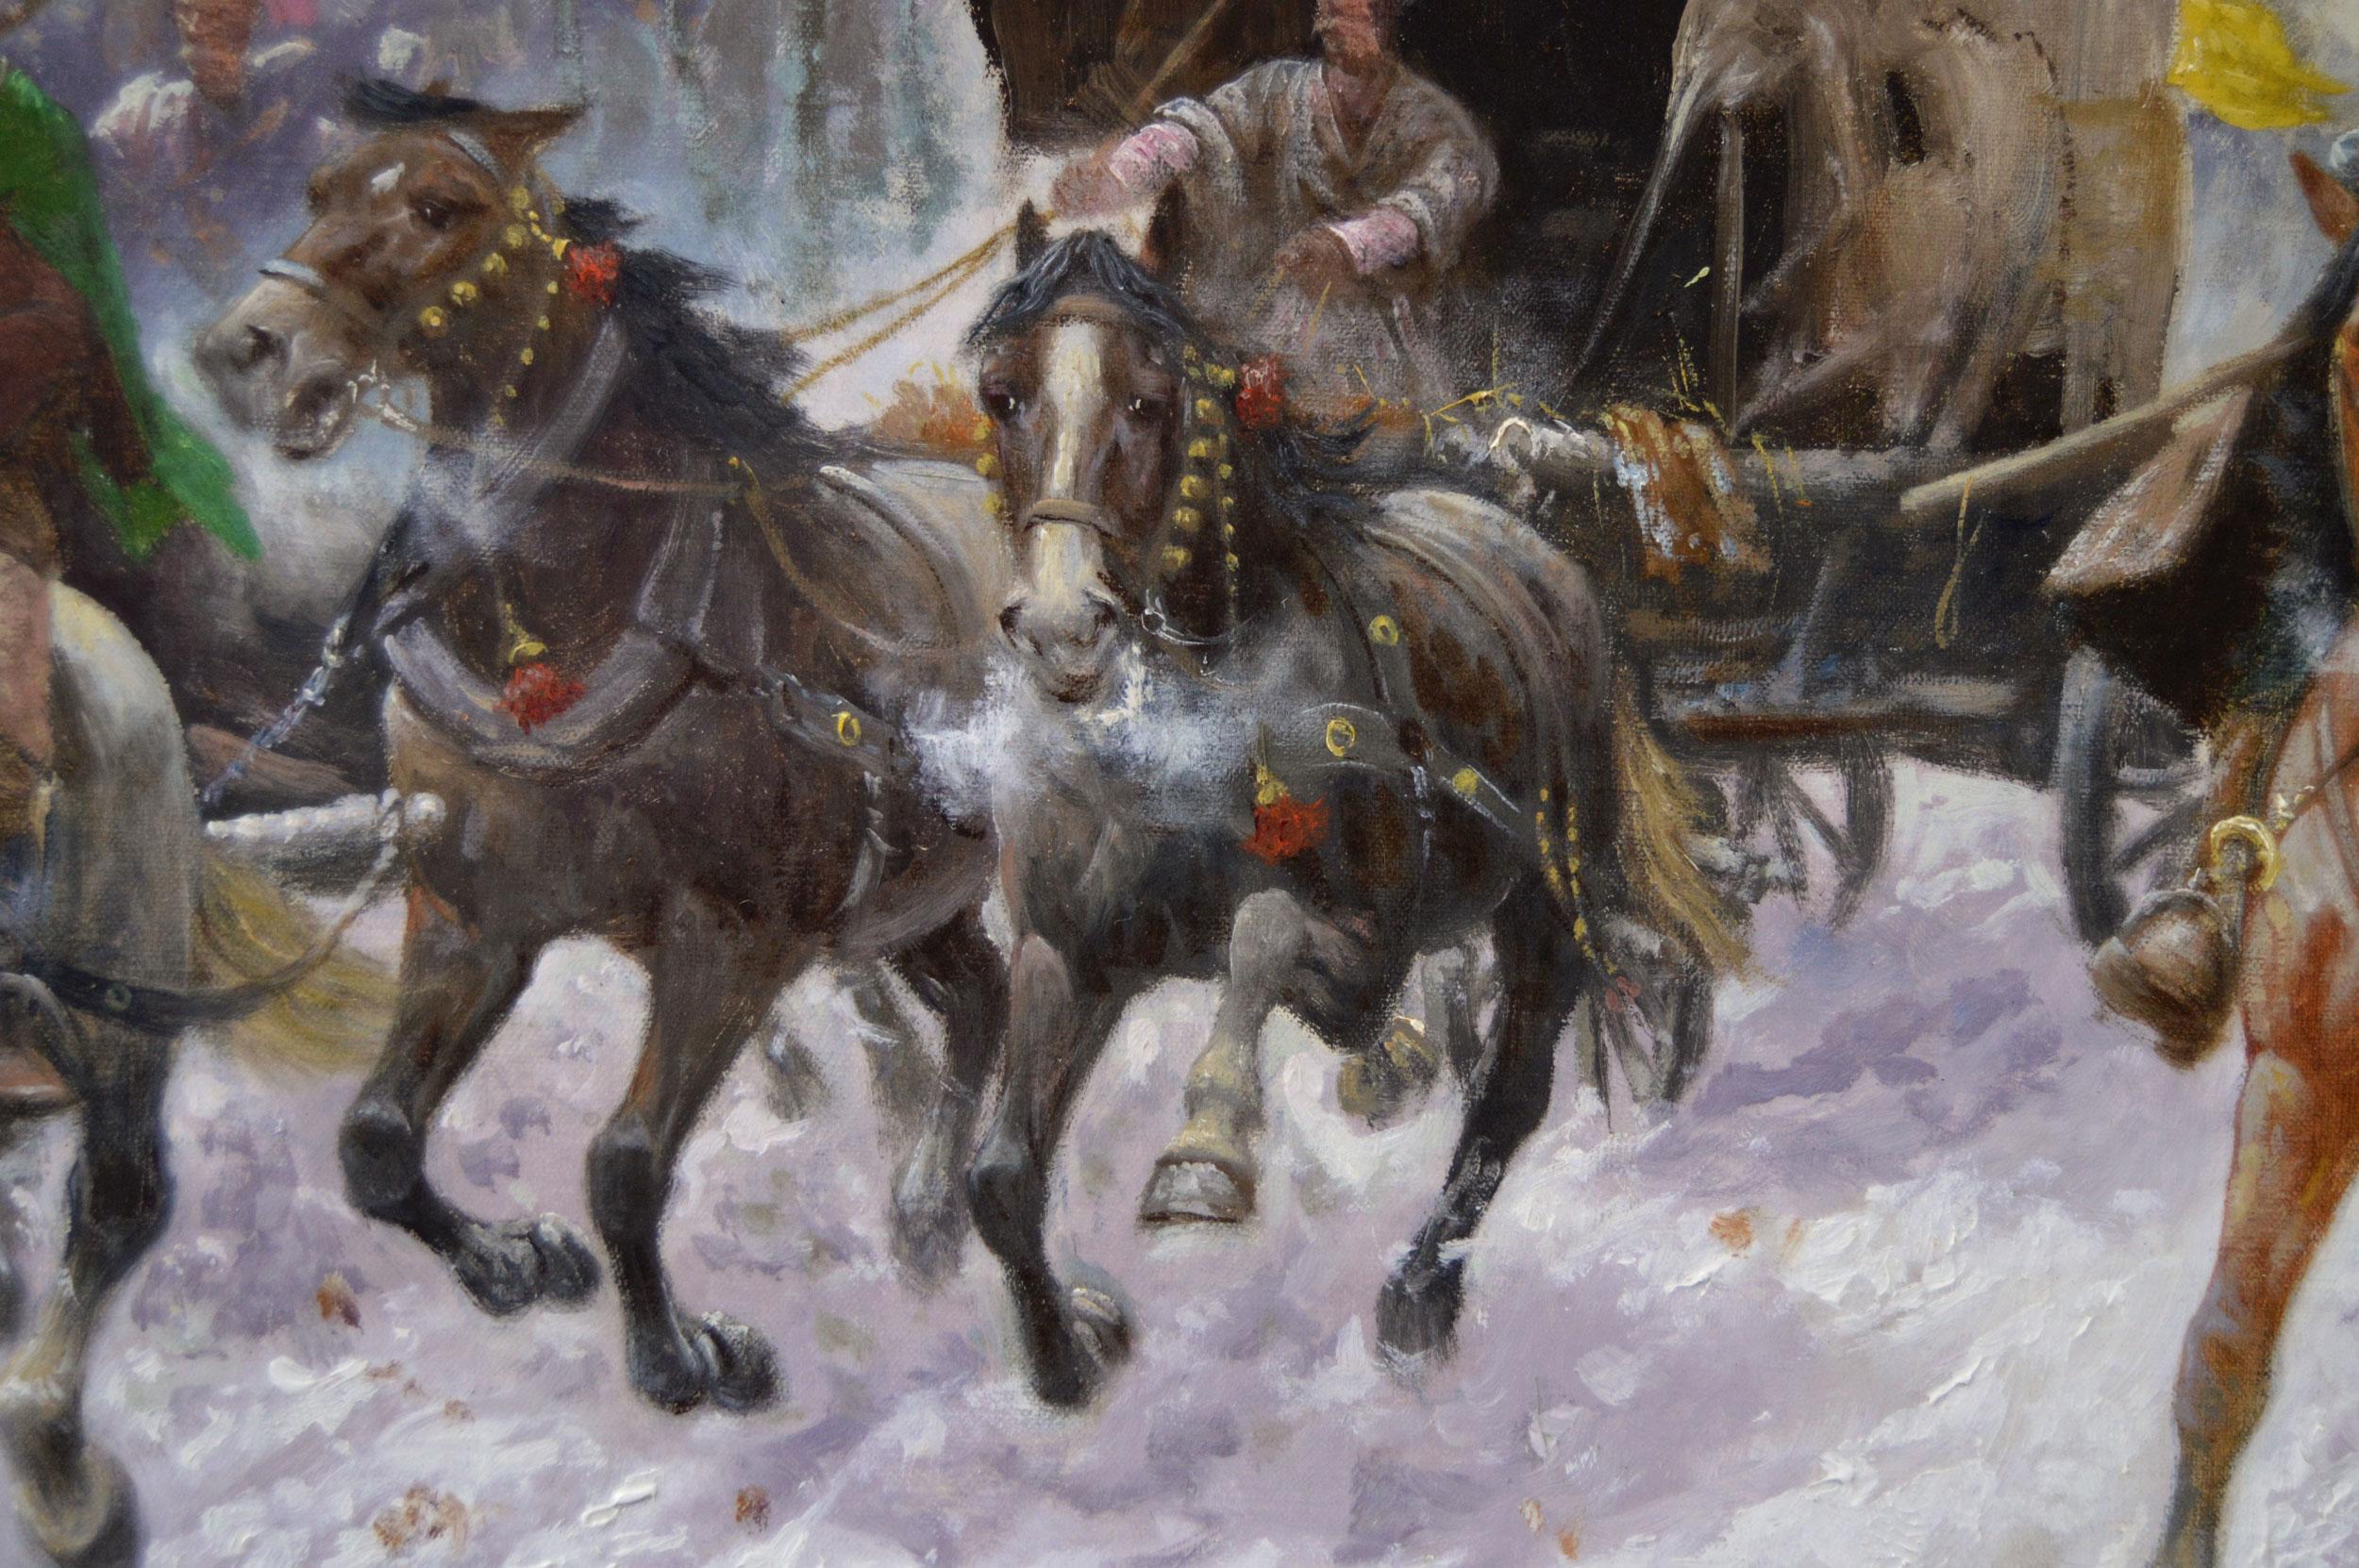 Adolf Constantin Baumgartner-Stoiloff
Autrichien (1850-1924)
Le convoi d'or
Huile sur toile, signée
Taille de l'image : 26.25 pouces x 40.5 pouces 
Dimensions, y compris le cadre : 32.25 pouces x 46.5 pouces

Paysage hivernal animé de cosaques à